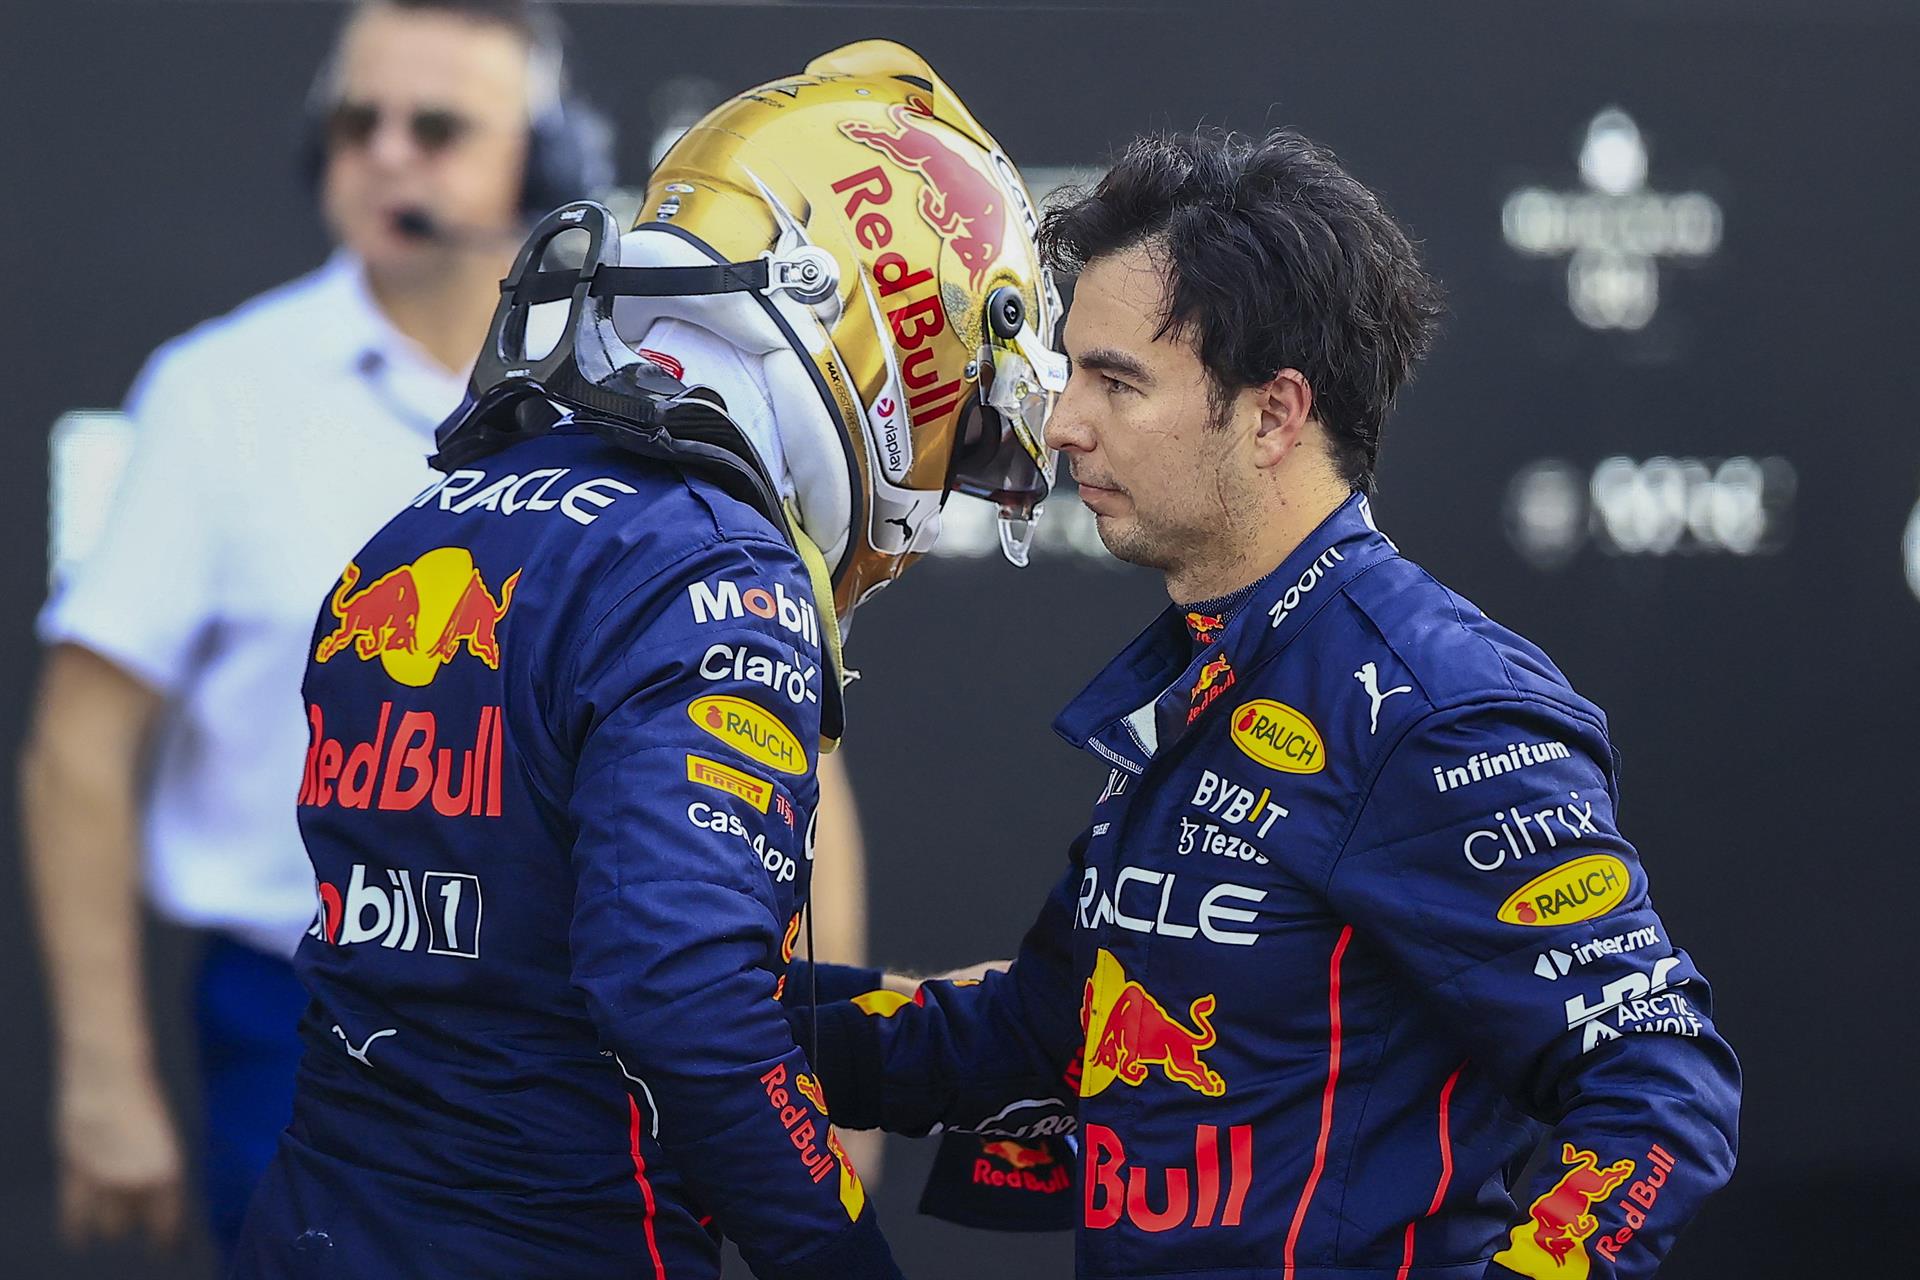 Fórmula Uno Red Bull, la escudería líder del momento, confirmó a sus